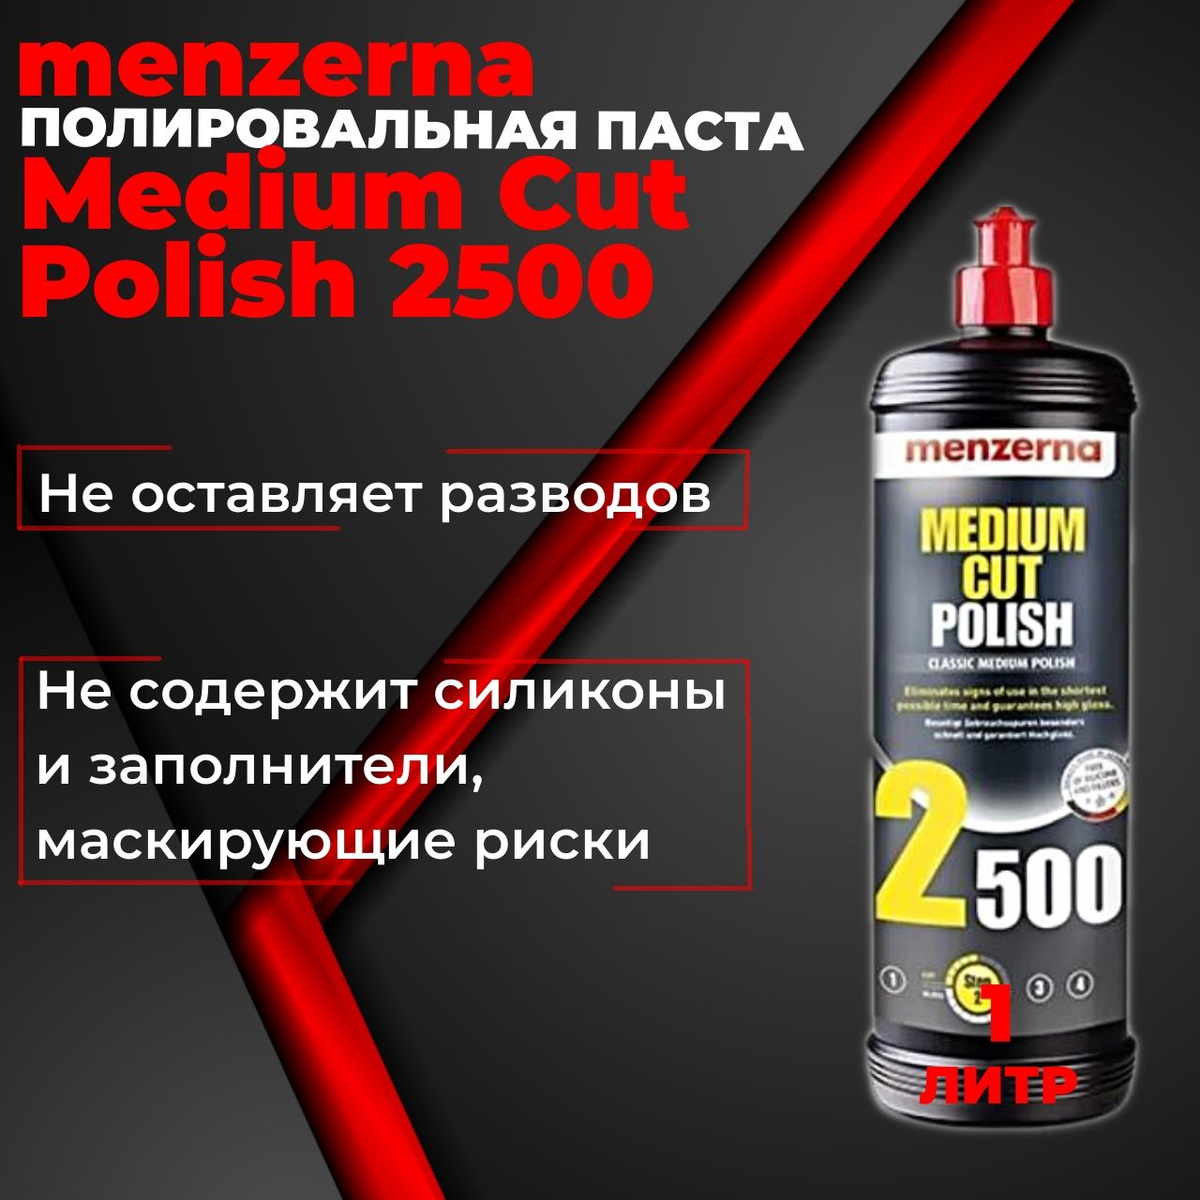 Среднеабразивная полировальная паста Medium Cut Polish 2500 1 л Menzerna 22828.261.870